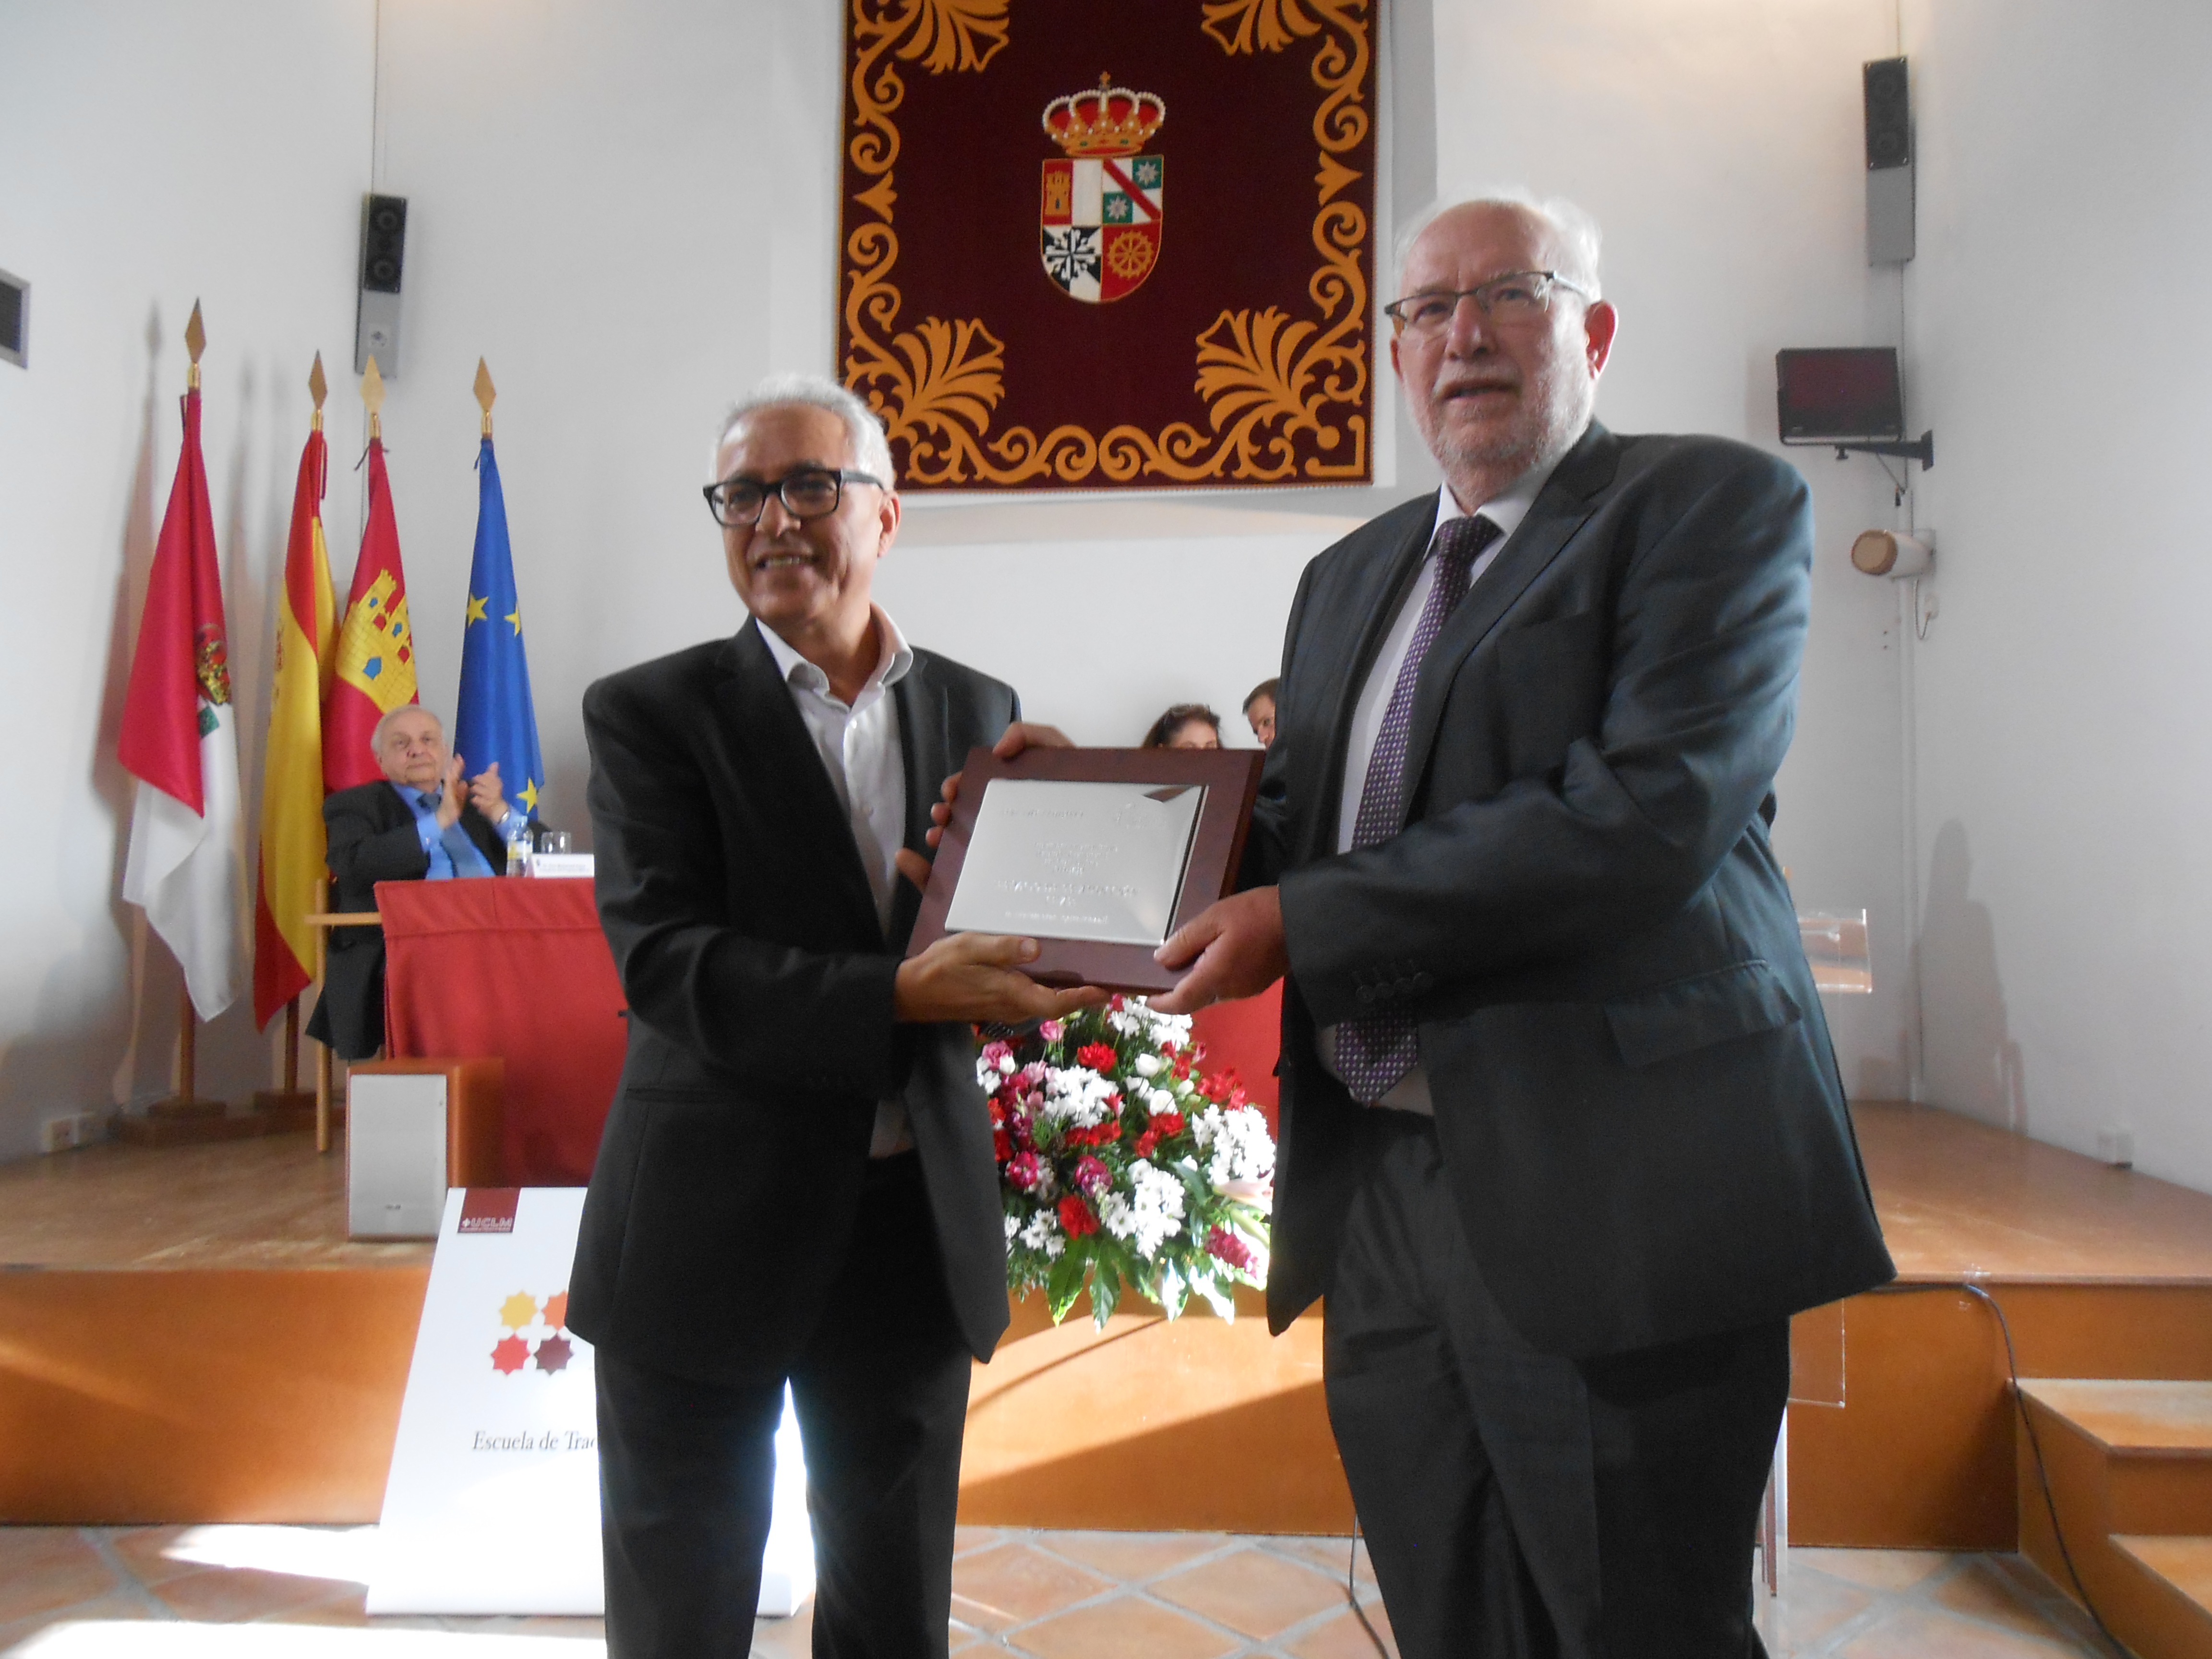 Gerardo de Cremona Translation Award 